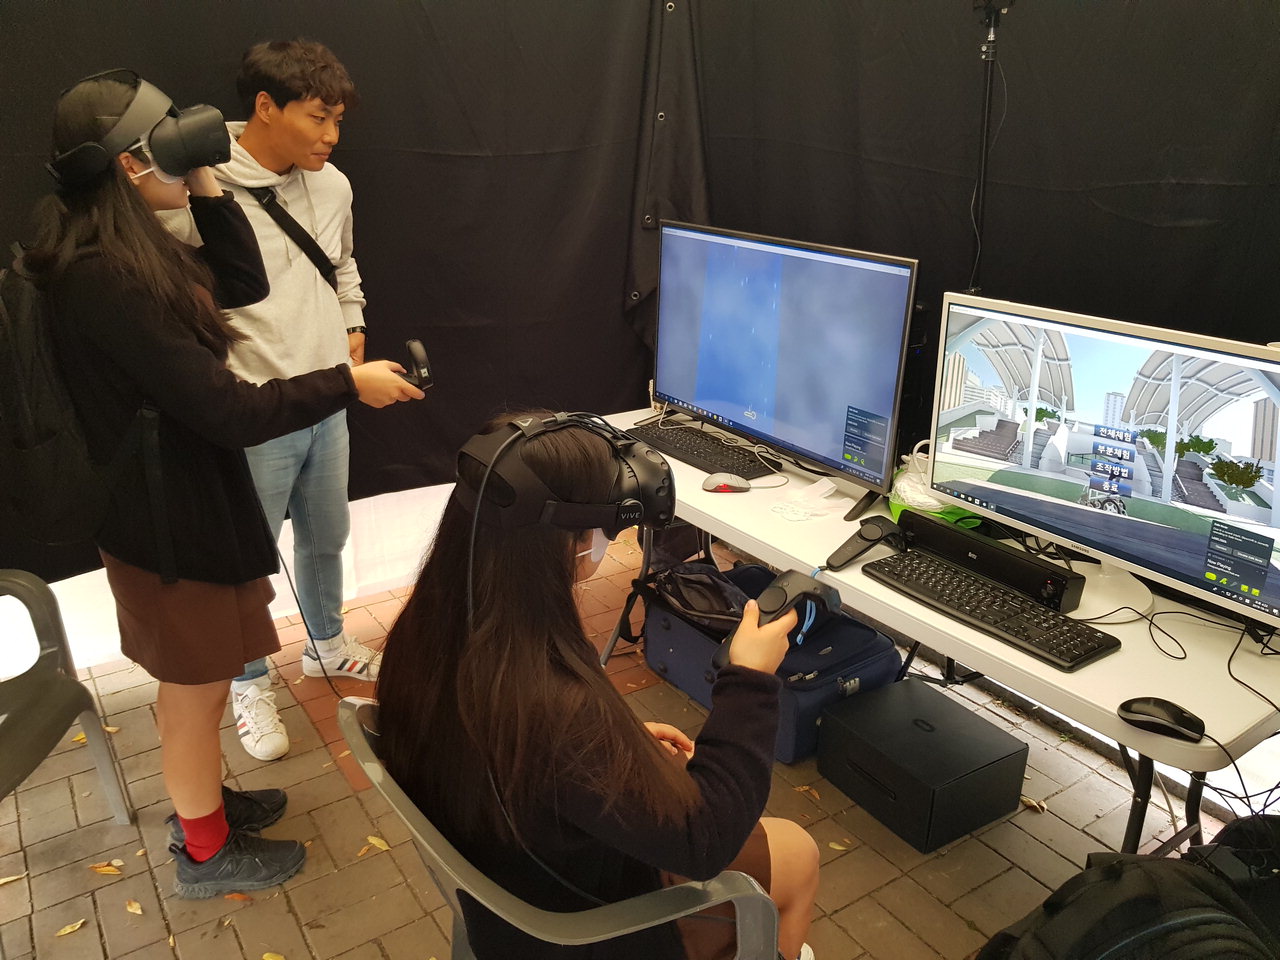 보은군보건소에서 실시하고 있는 VR(가상현실) 장애체험이 학생들에게 큰 공감을 얻어내고 있다. / 보은군보건소 제공